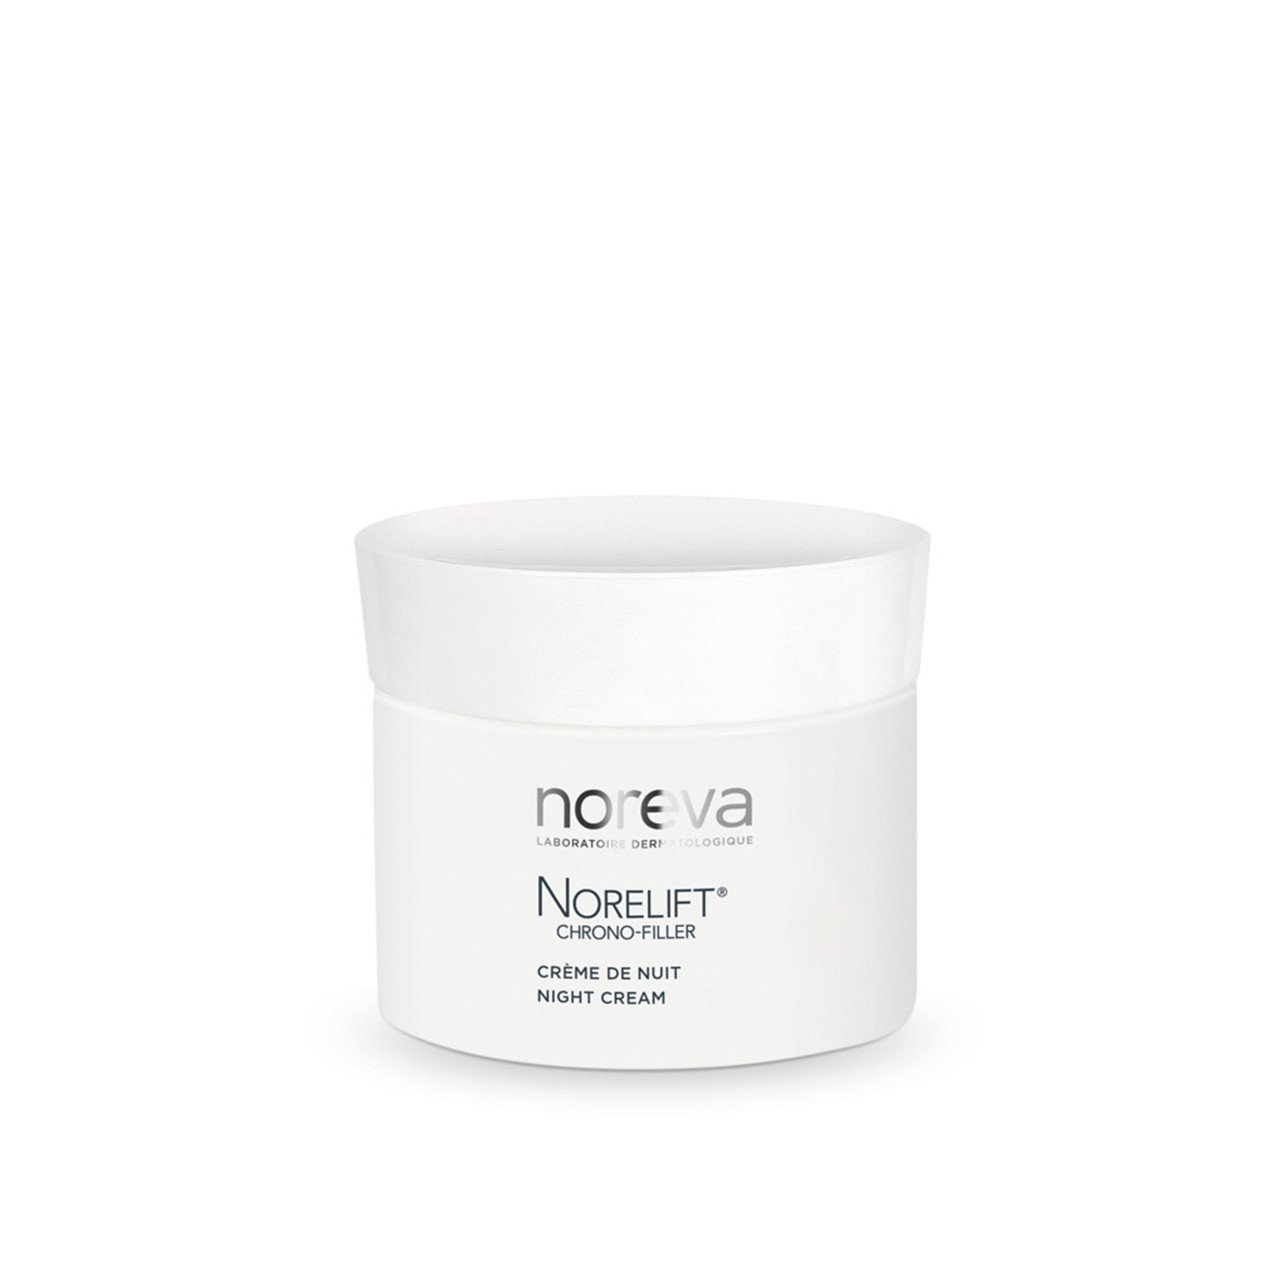 Noreva Norelift Chrono-Filler Night Cream 50ml (1.69fl oz)